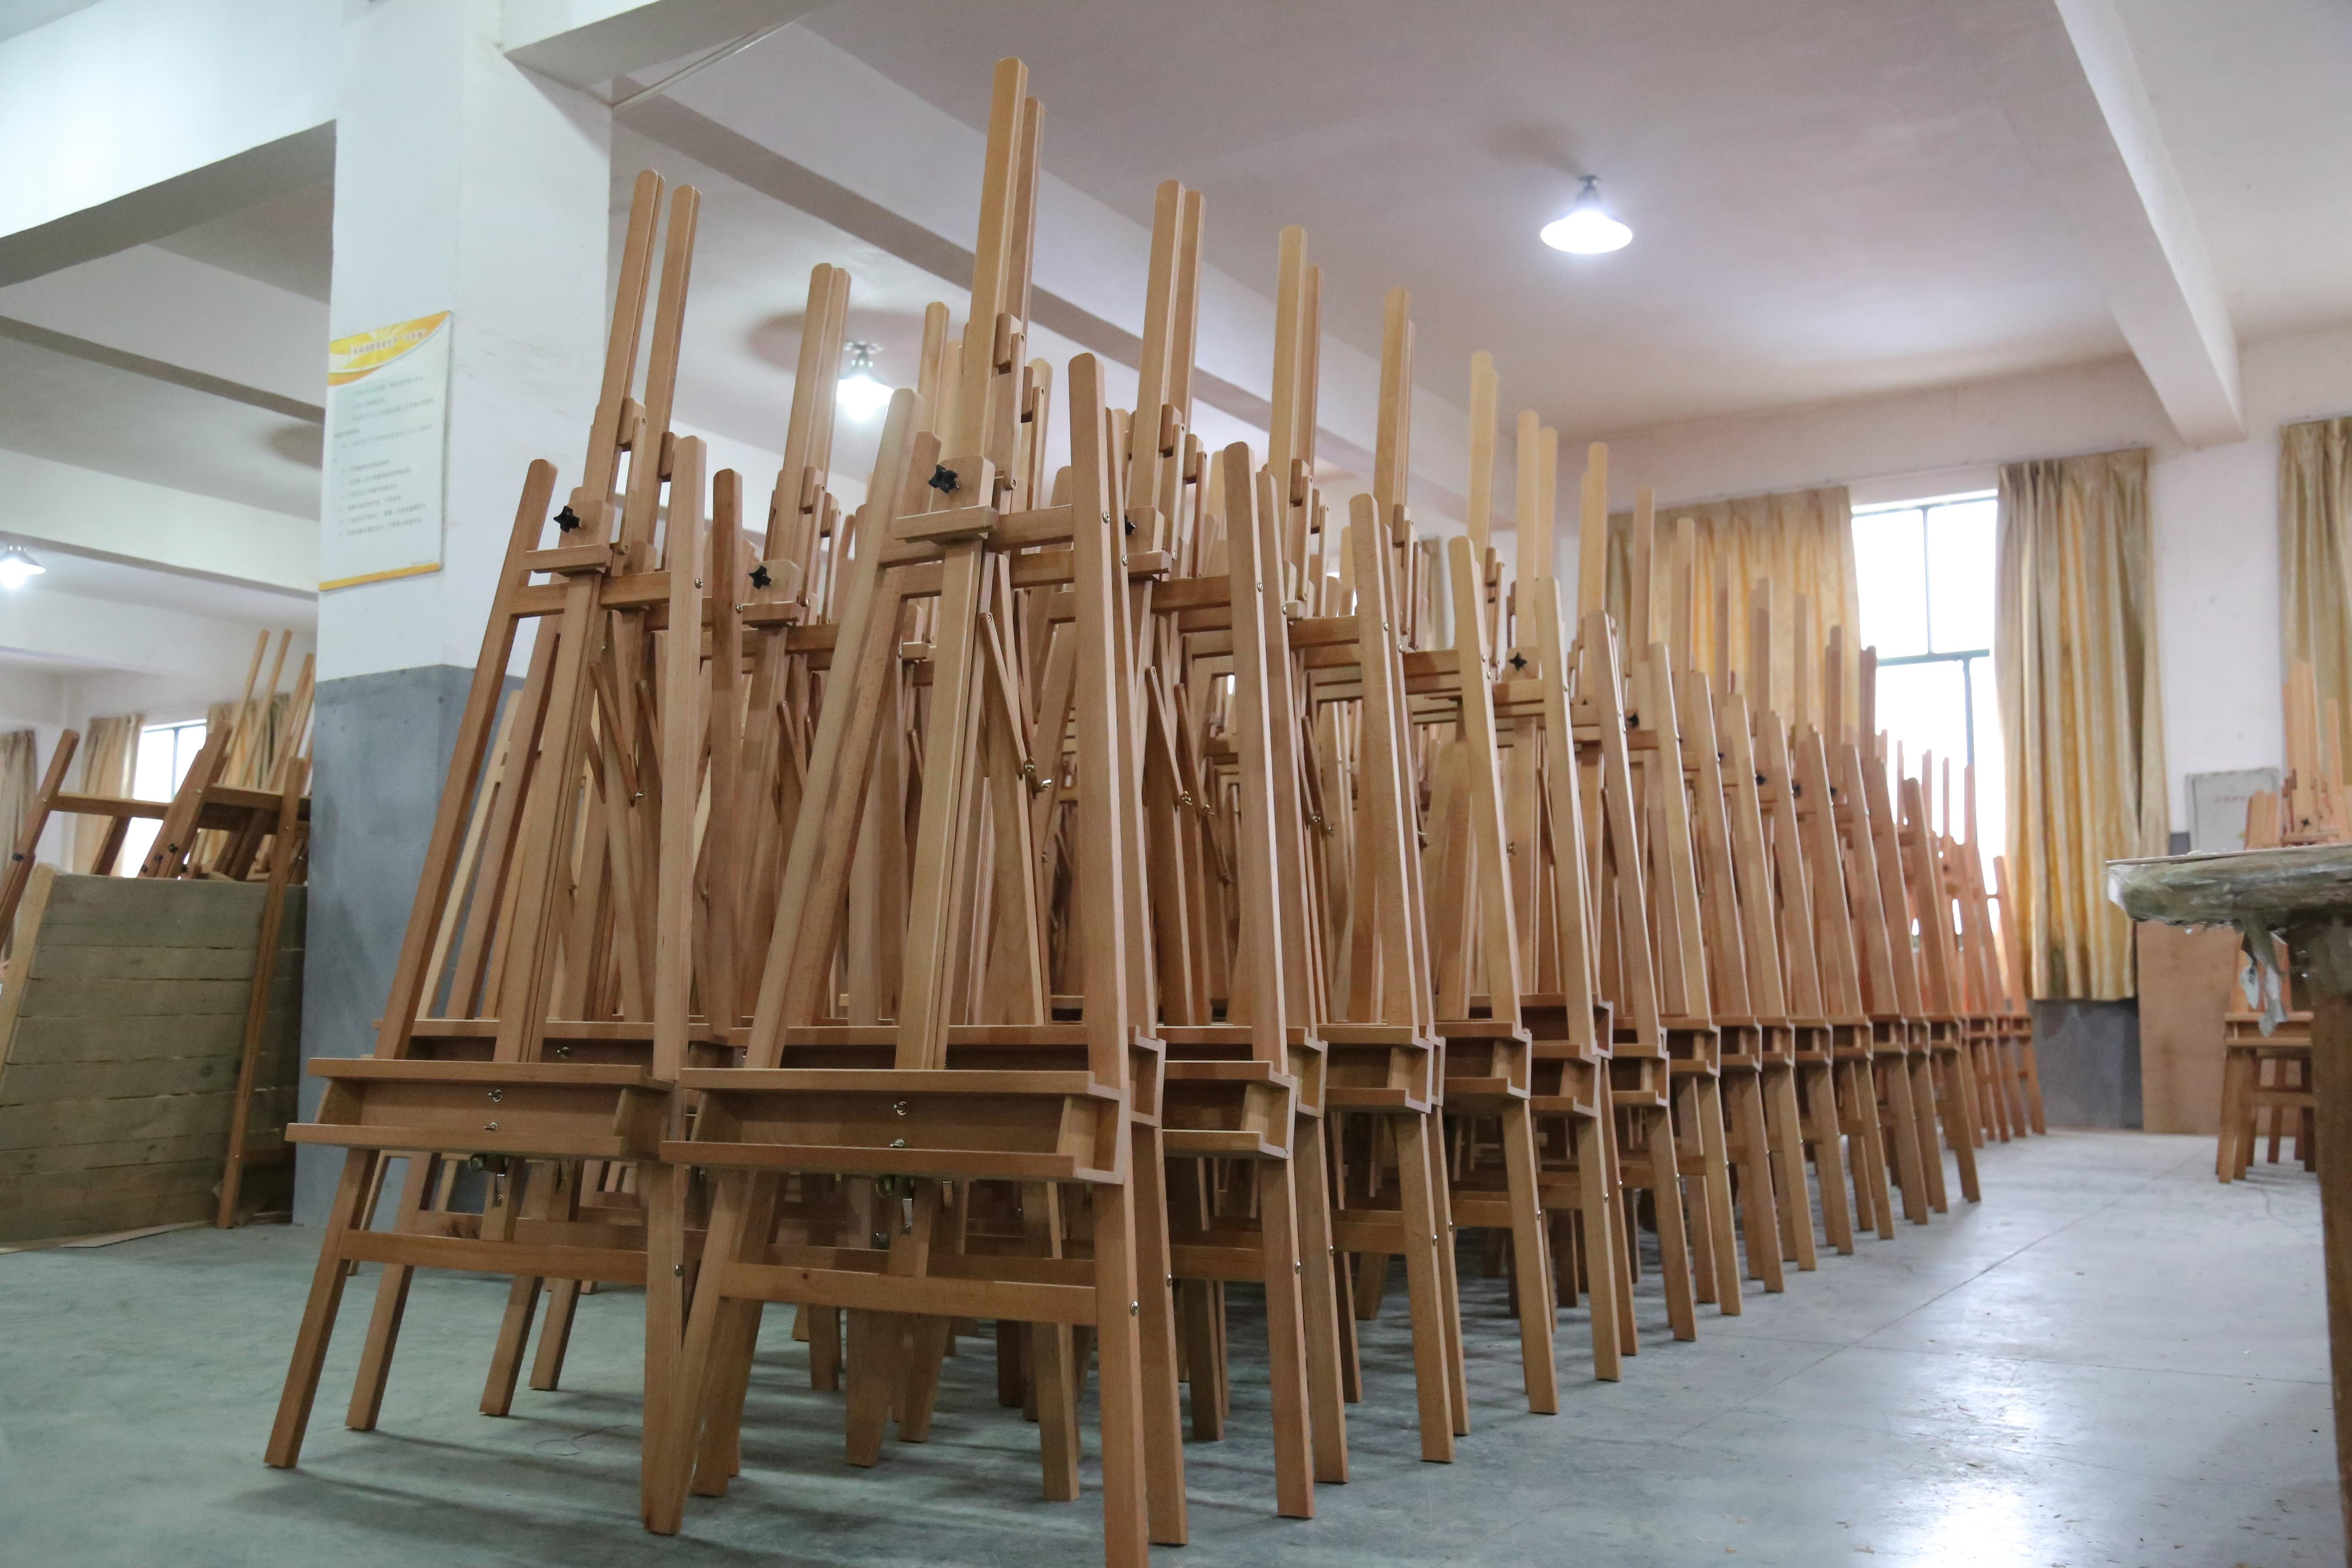 28 años de fabricación de caballetes de madera en China: un vistazo a SINOART